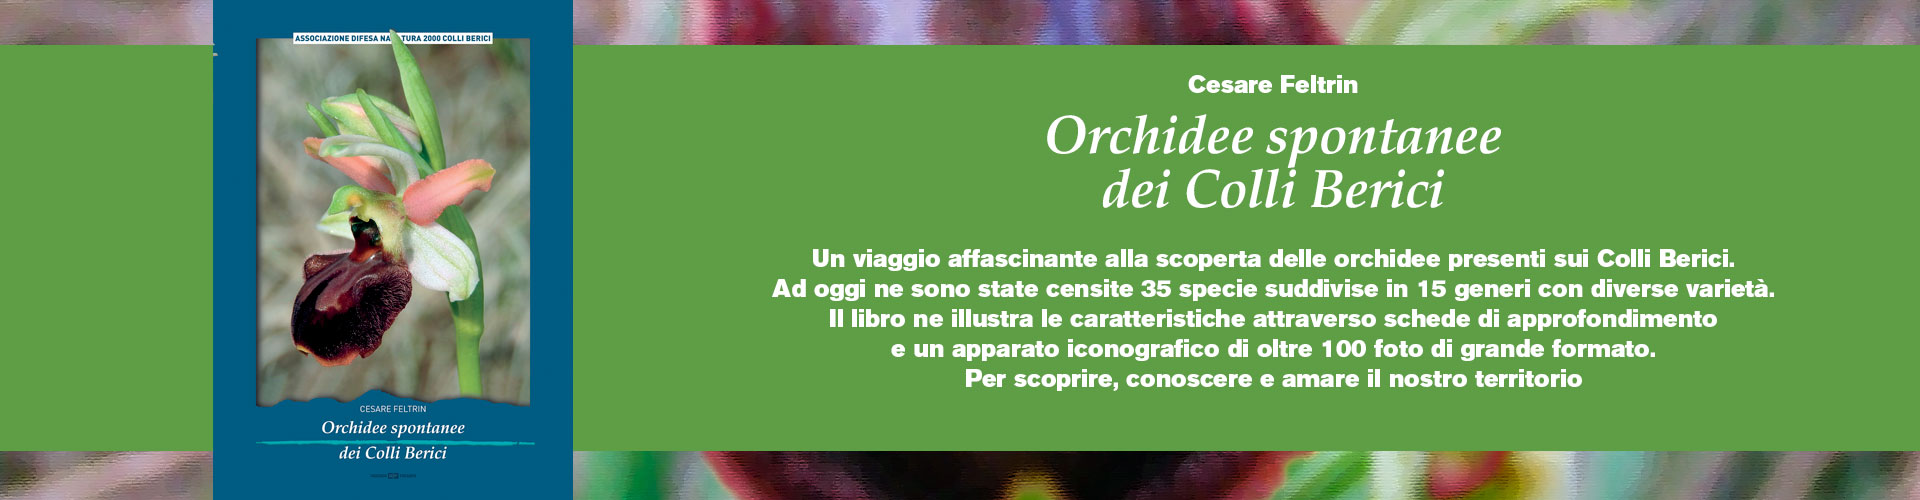 Orchidee-spontanee-dei-Colli-Berici